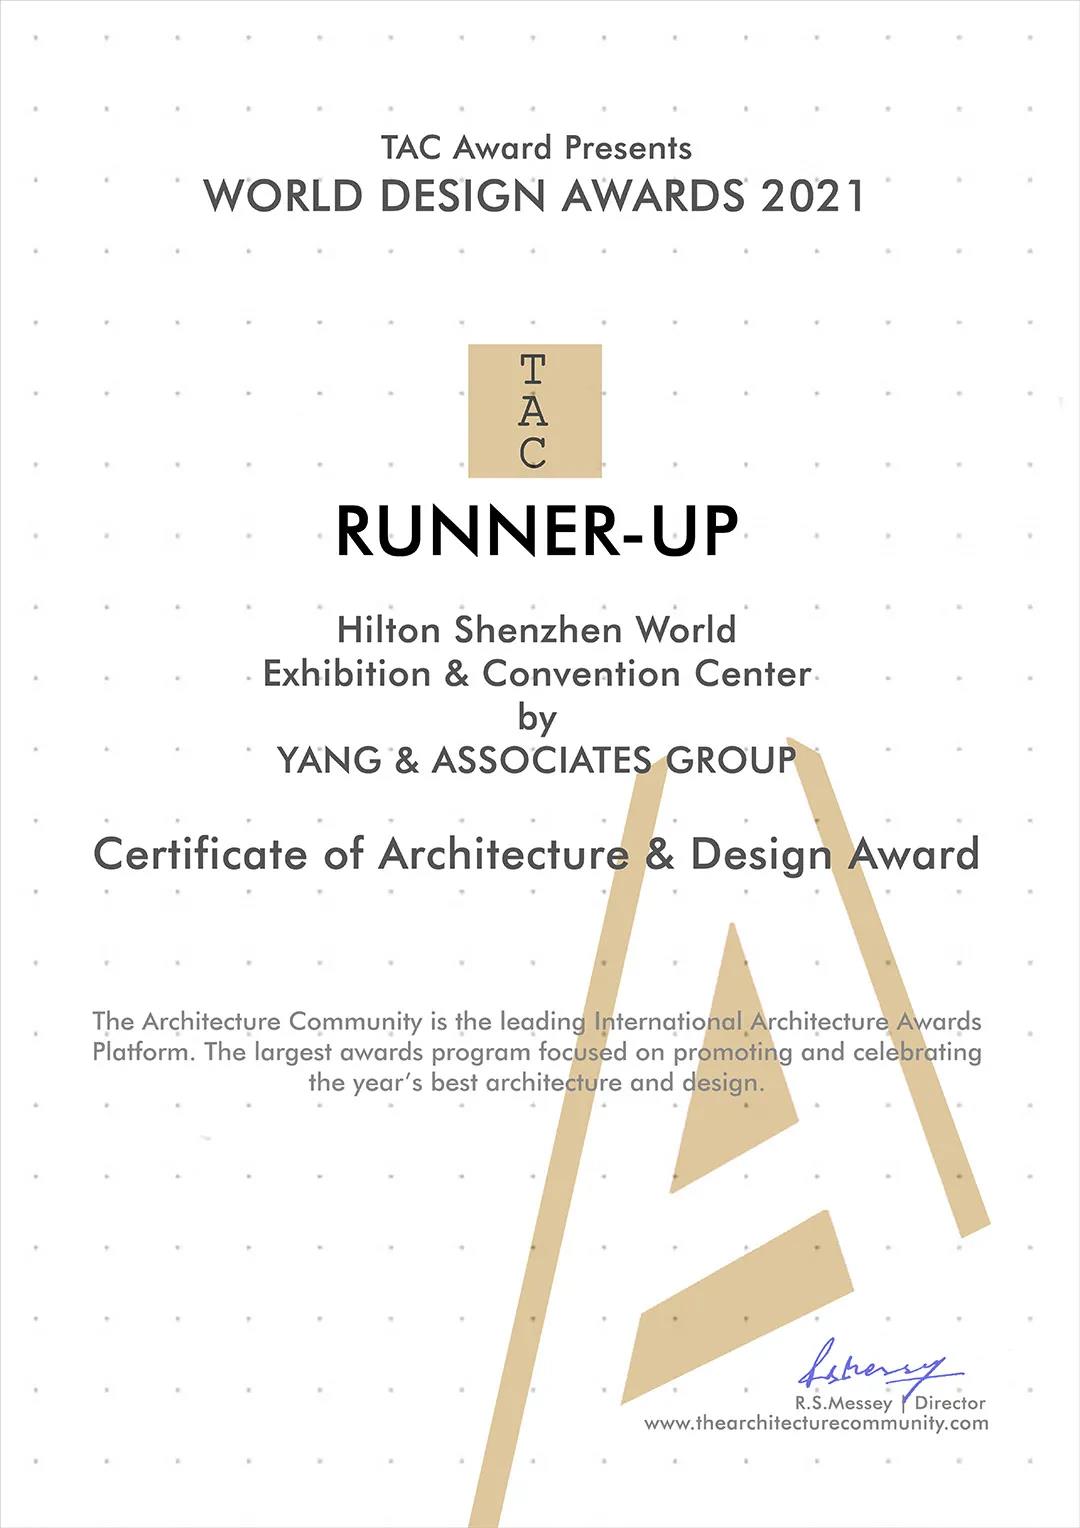 深圳国际会展希尔顿酒店荣获2021 World Design Awards 世界设计奖